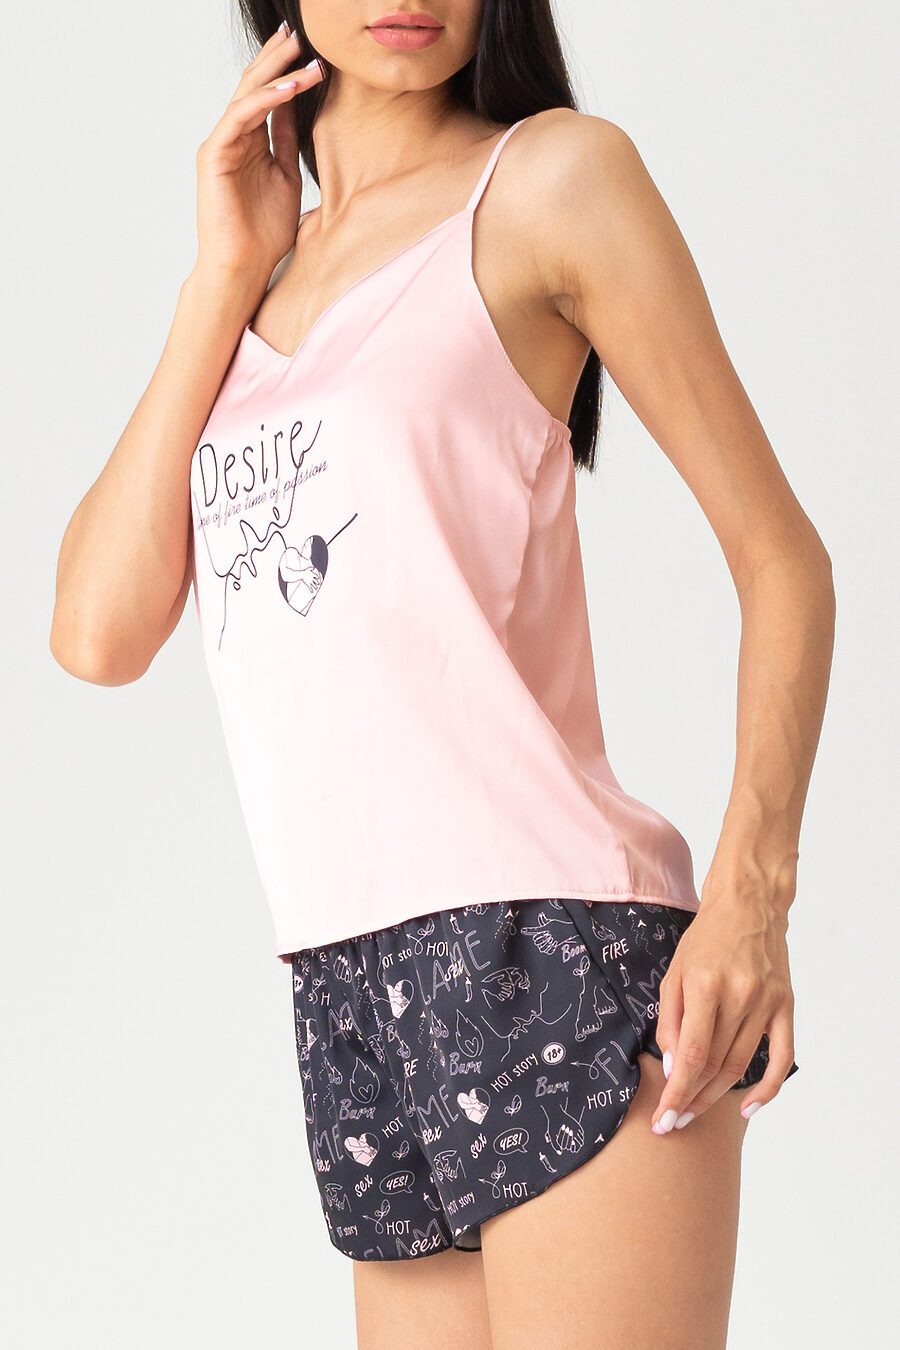 Пижама женская Hot Story Desire (майка + шорты) для женщин НАТАЛИ 741331 купить оптом от производителя. Совместная покупка женской одежды в OptMoyo